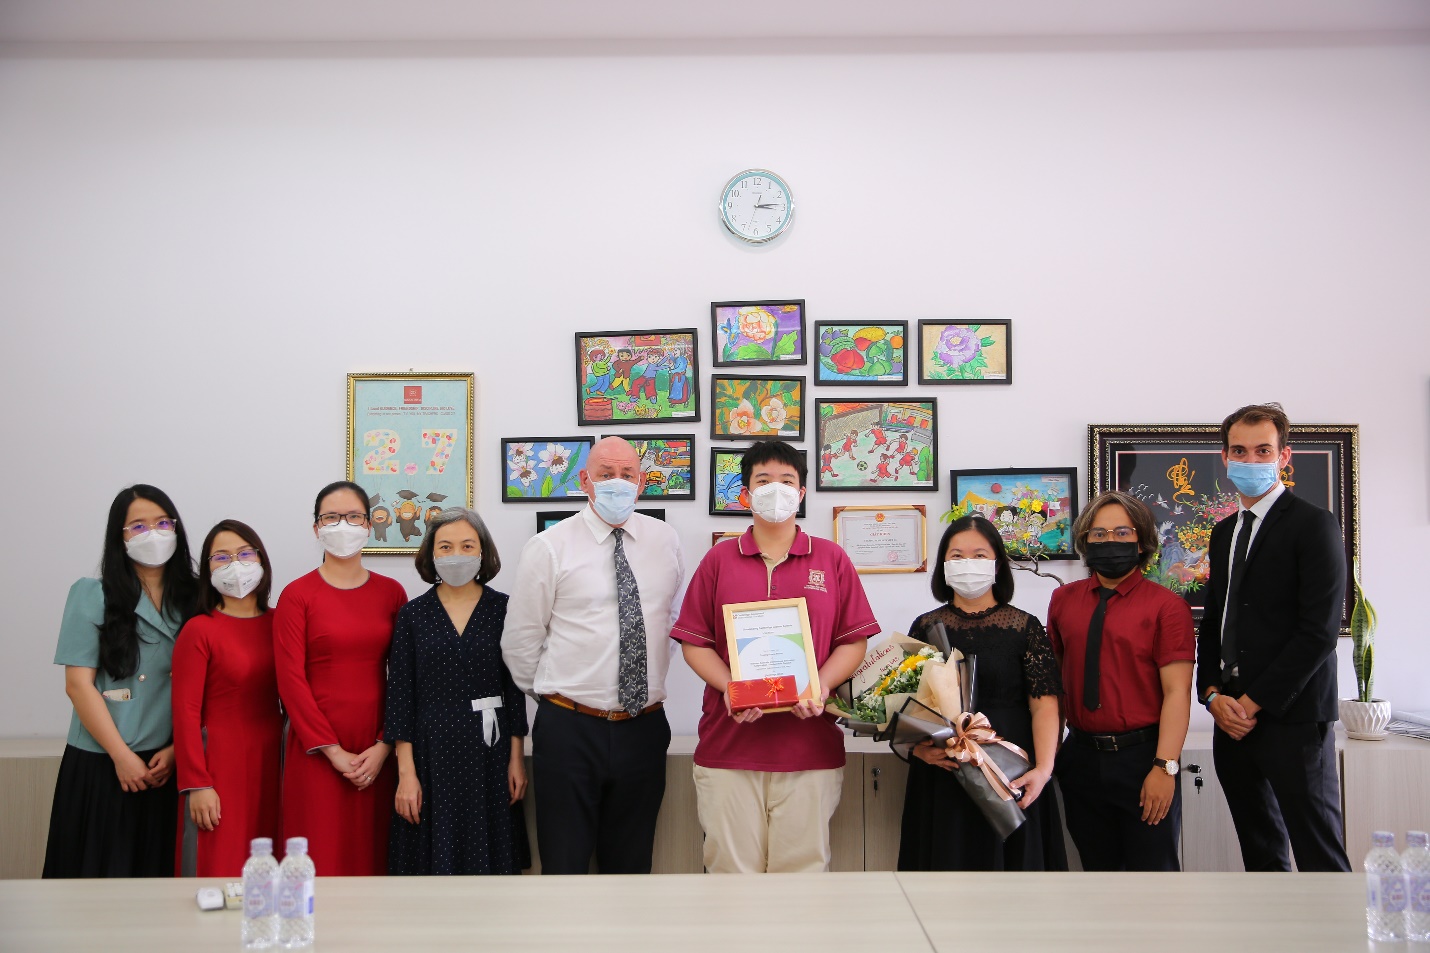 Trương Quang Phước (giữa) với thành tích cao nhất Quốc gia - “Top In Country” cho môn Toán, kỳ thi IGCSE - Ảnh: VAS